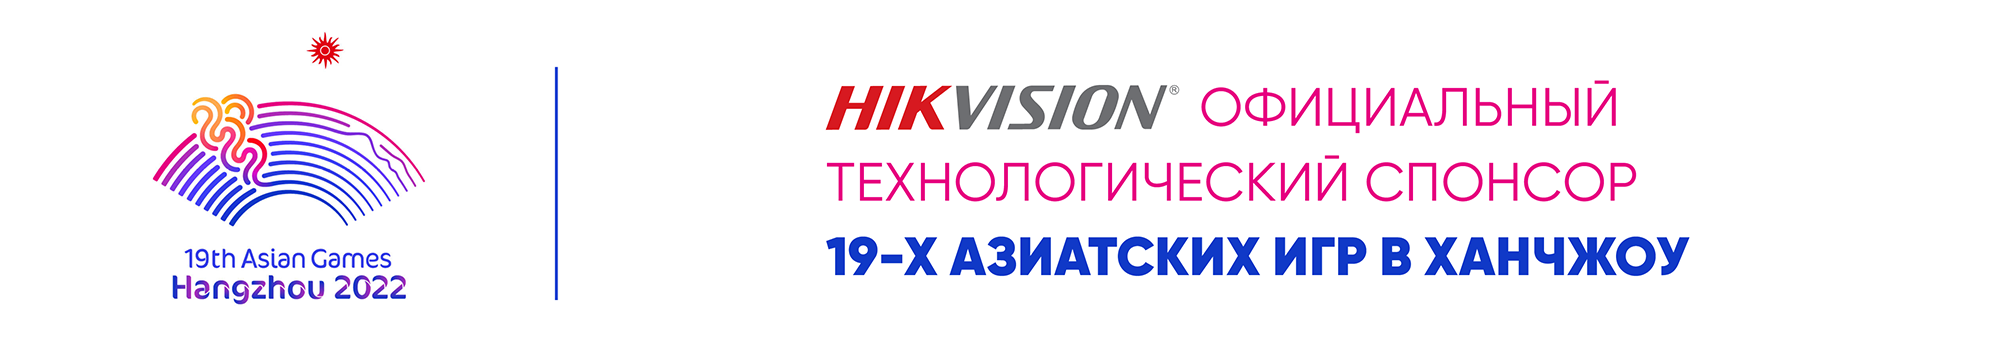 Hikvision стала официальным технологическим спонсором Азиатских игр-2022 в Ханчжоу